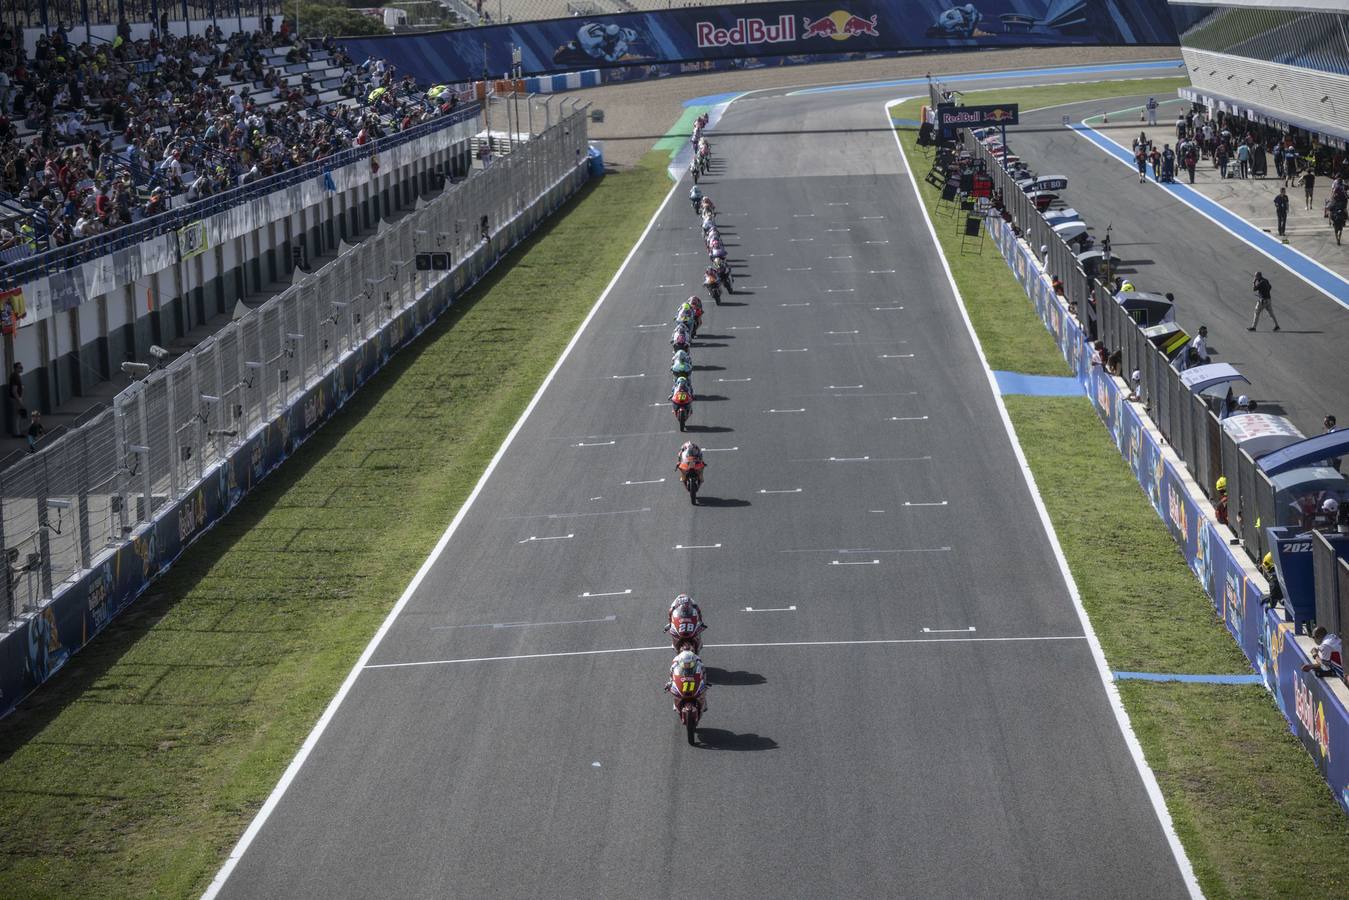 GALERÍA: Las mejores imágenes de MotoGP Jerez 2022